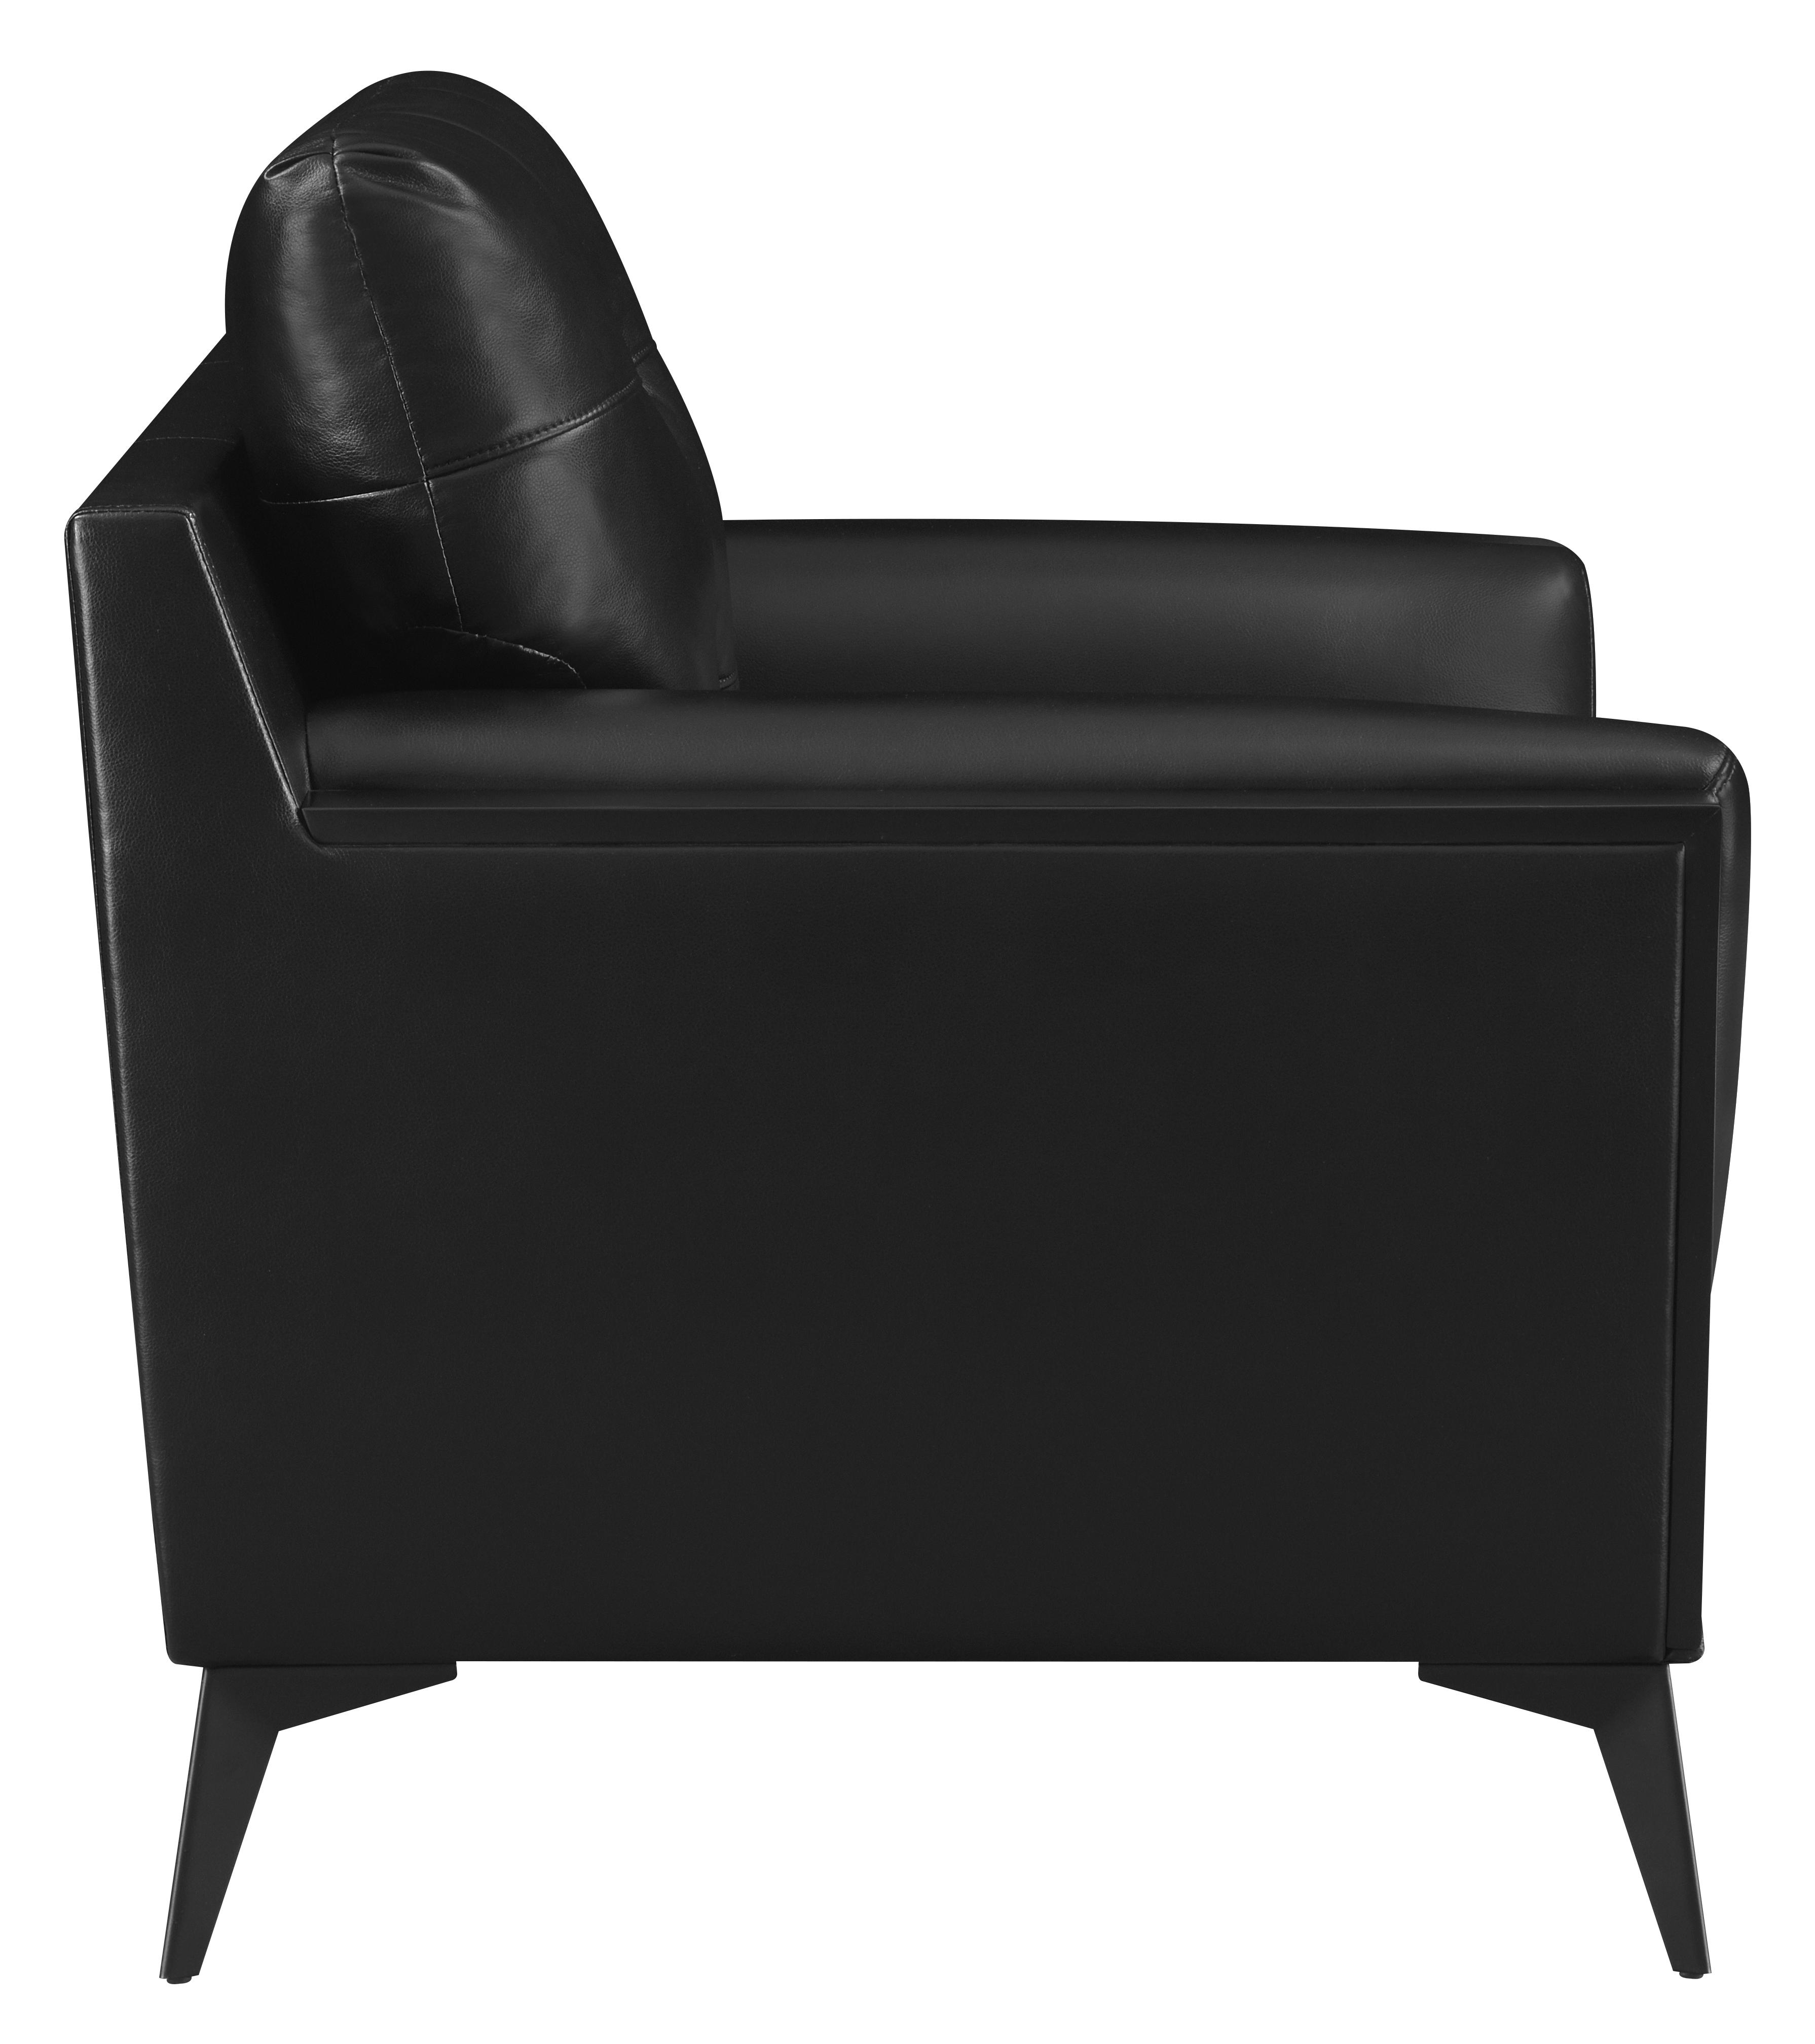 

    
Coaster 511133 Moira Arm Chair Black 511133
